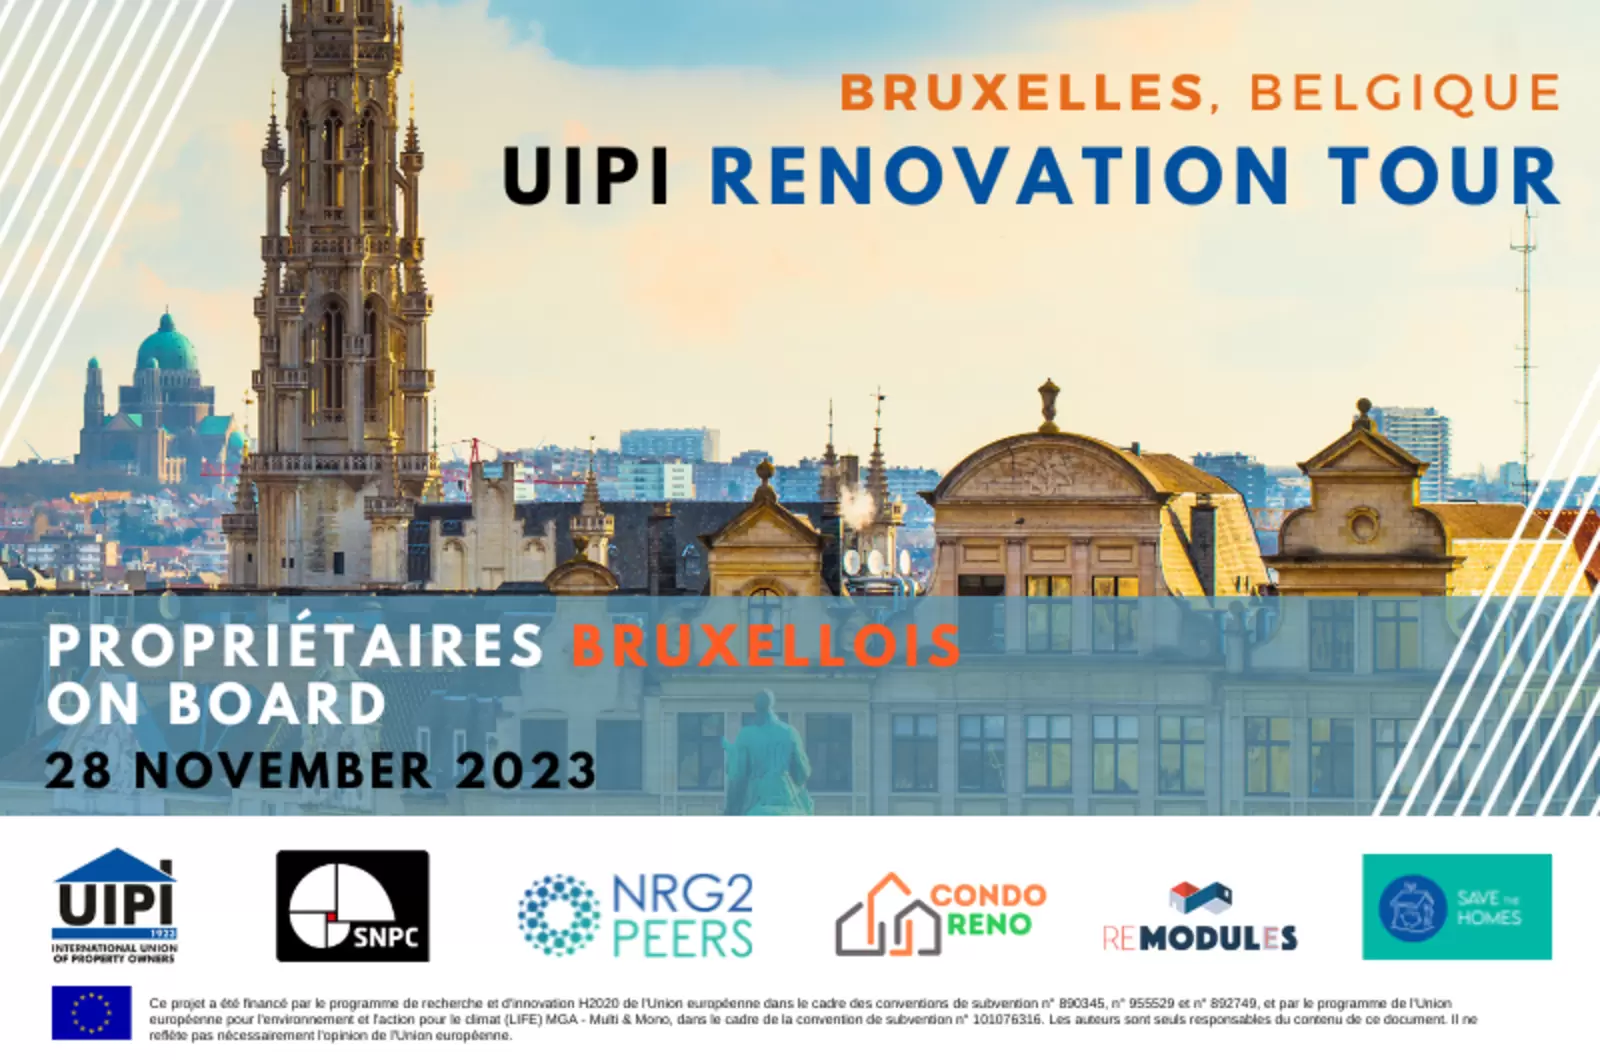 UIPI Renovation Tour: Les propriétaires Bruxellois on board